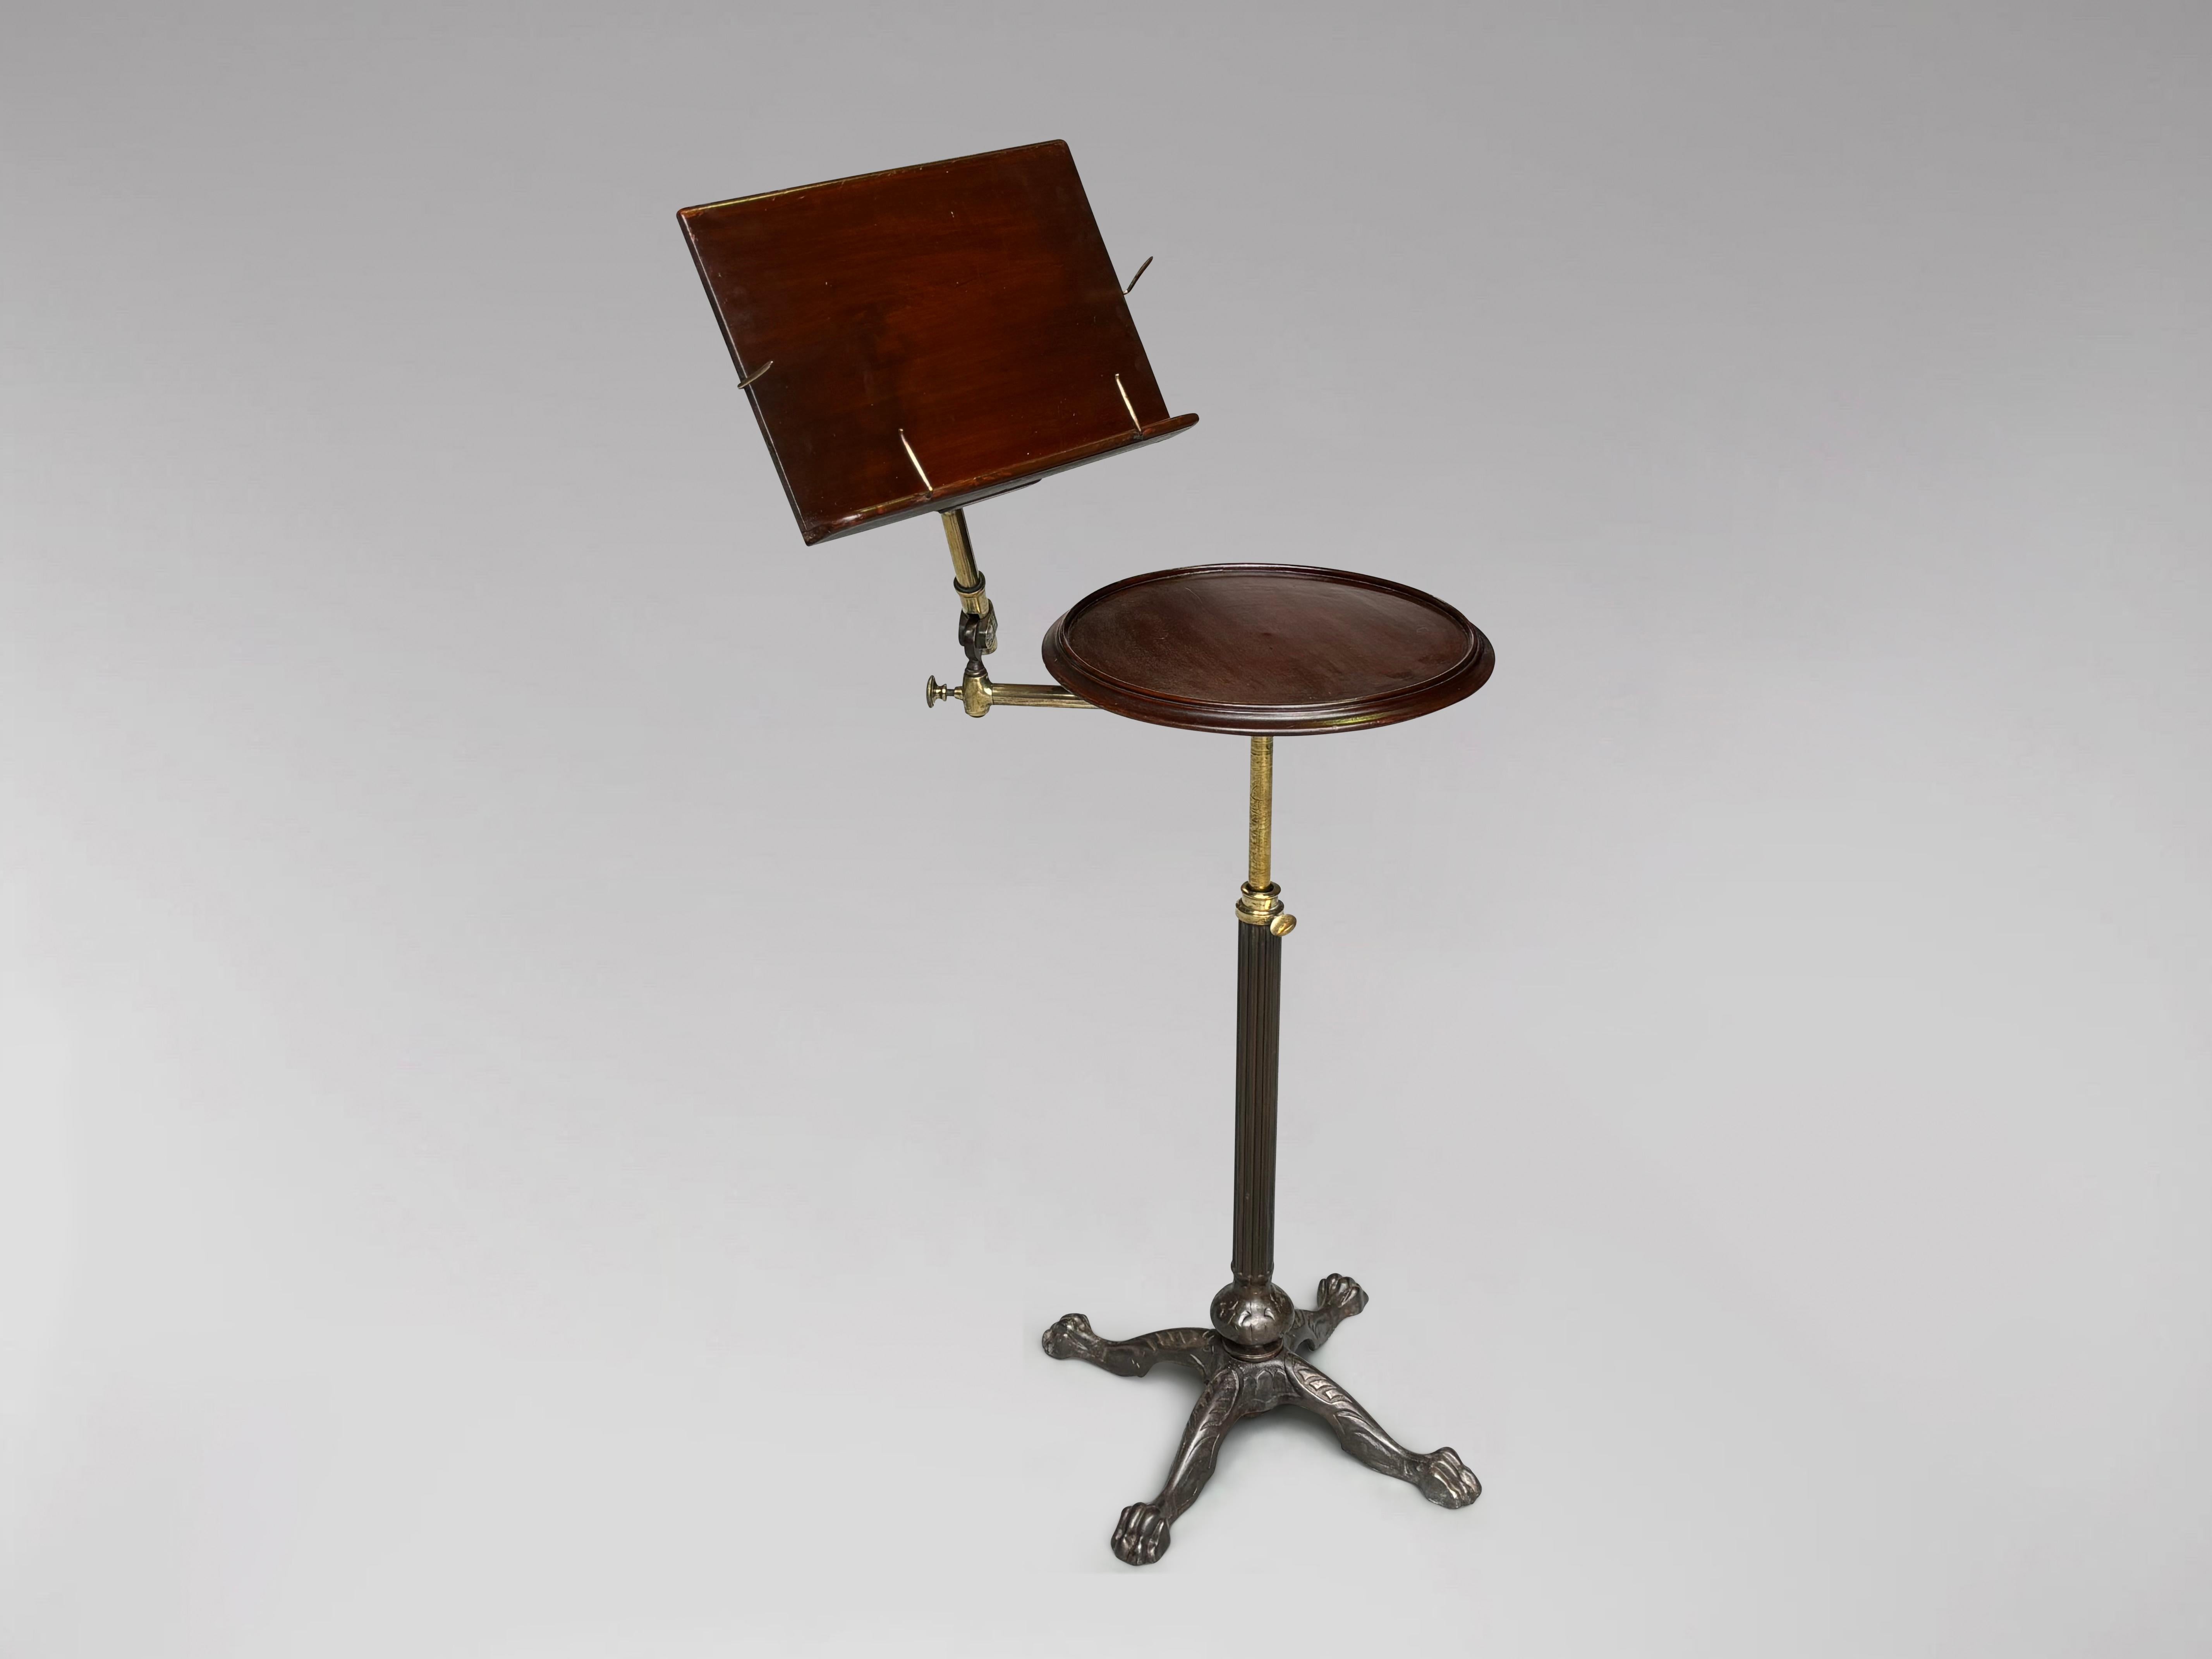 Hochwertiges verstellbares rechteckiges Lesepult mit rundem Tisch aus dem späten 19. Zwei Tische aus massivem Mahagoni, die flach oder schräg auf einer Messing-Säule mit einem verstellbaren Messing-Mechanismus über einer schweren Säule aus Gusseisen